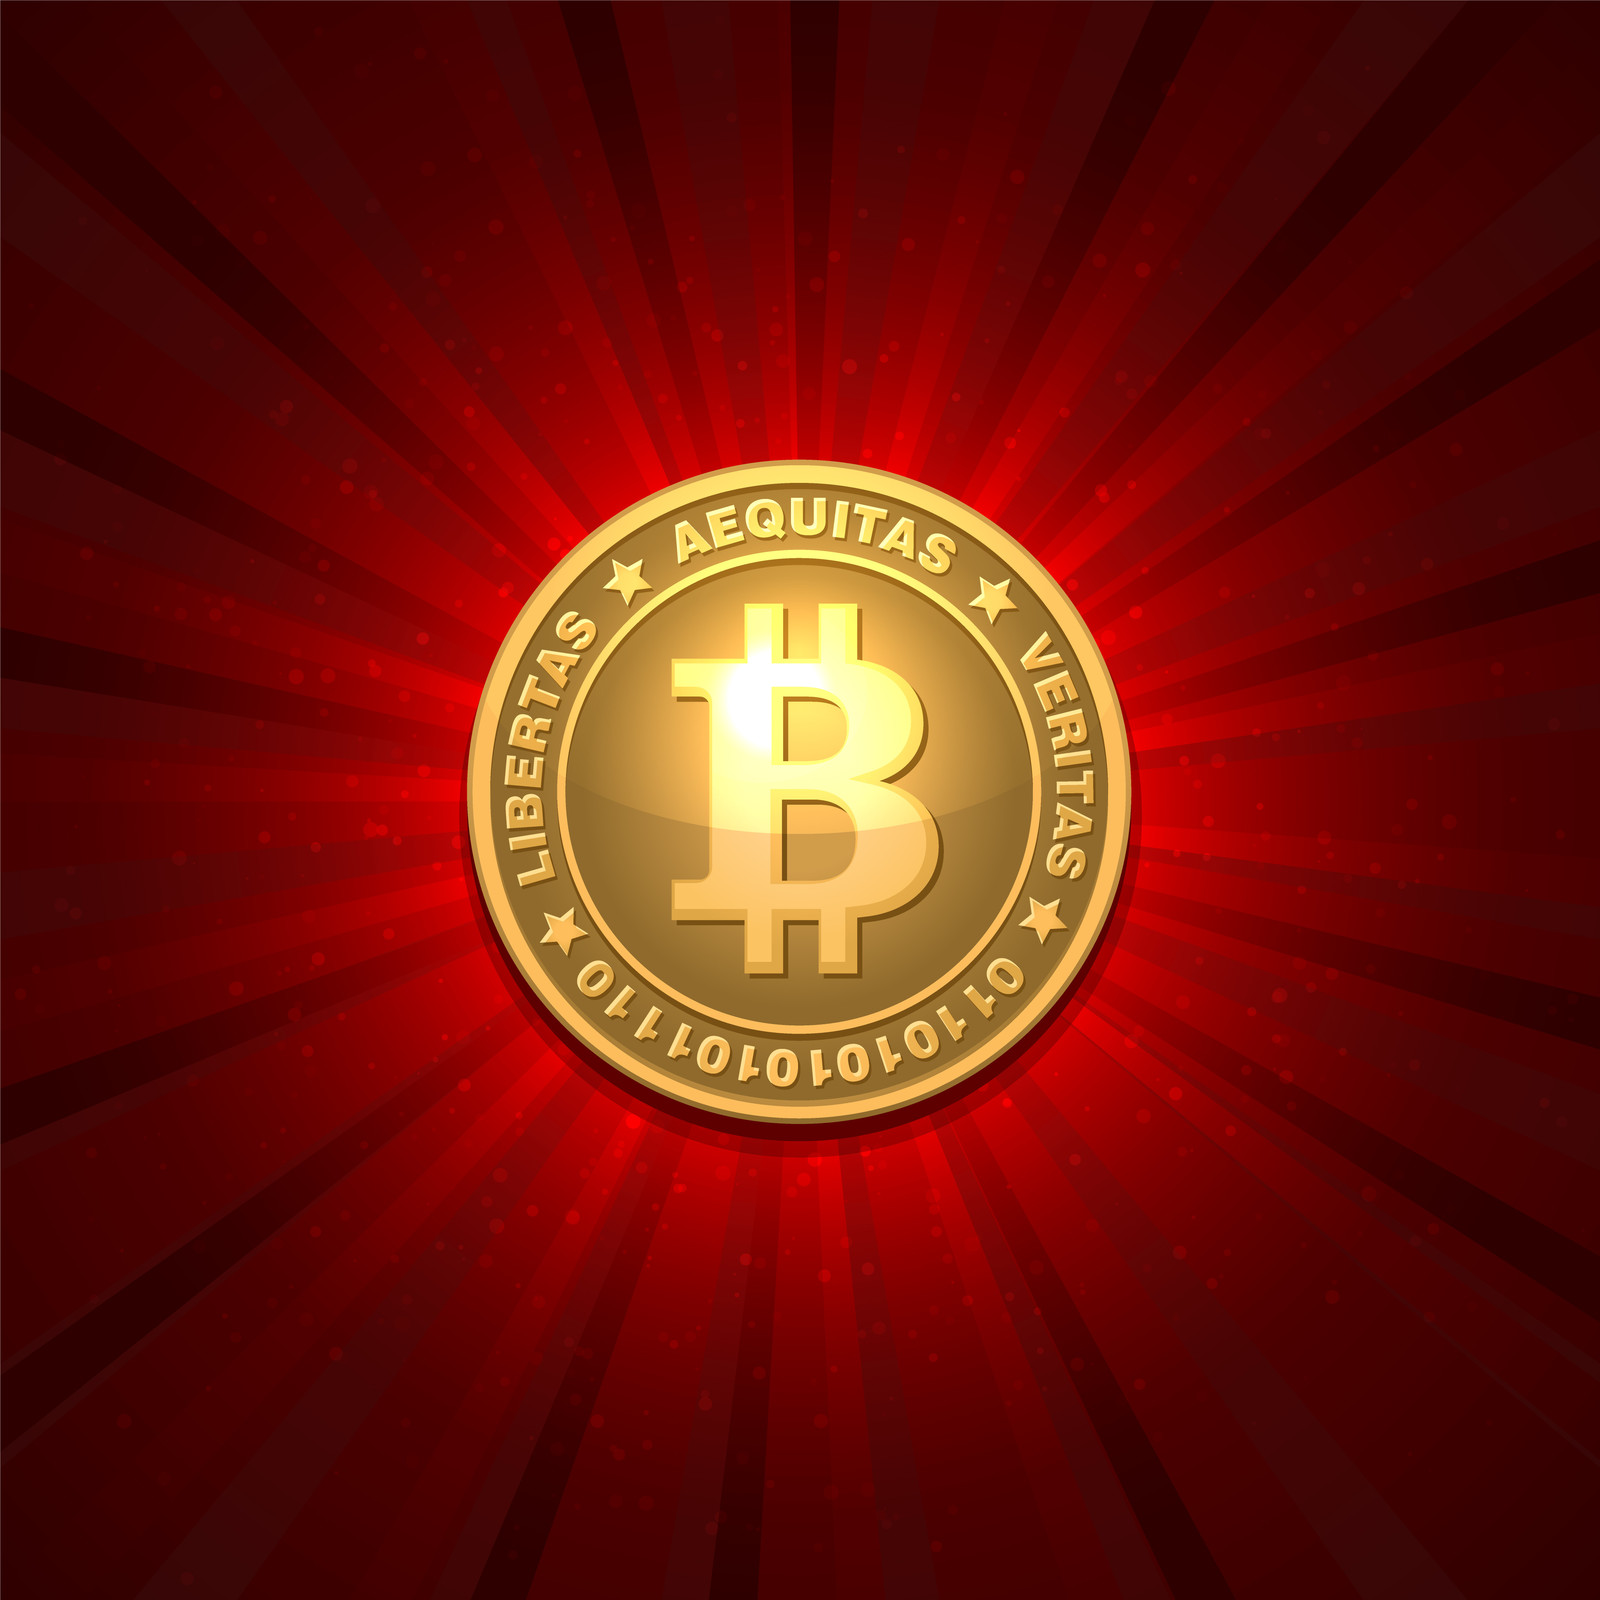  Le cours du bitcoin s’envole : entre spéculation et création d’un pouvoir objectif et neutre